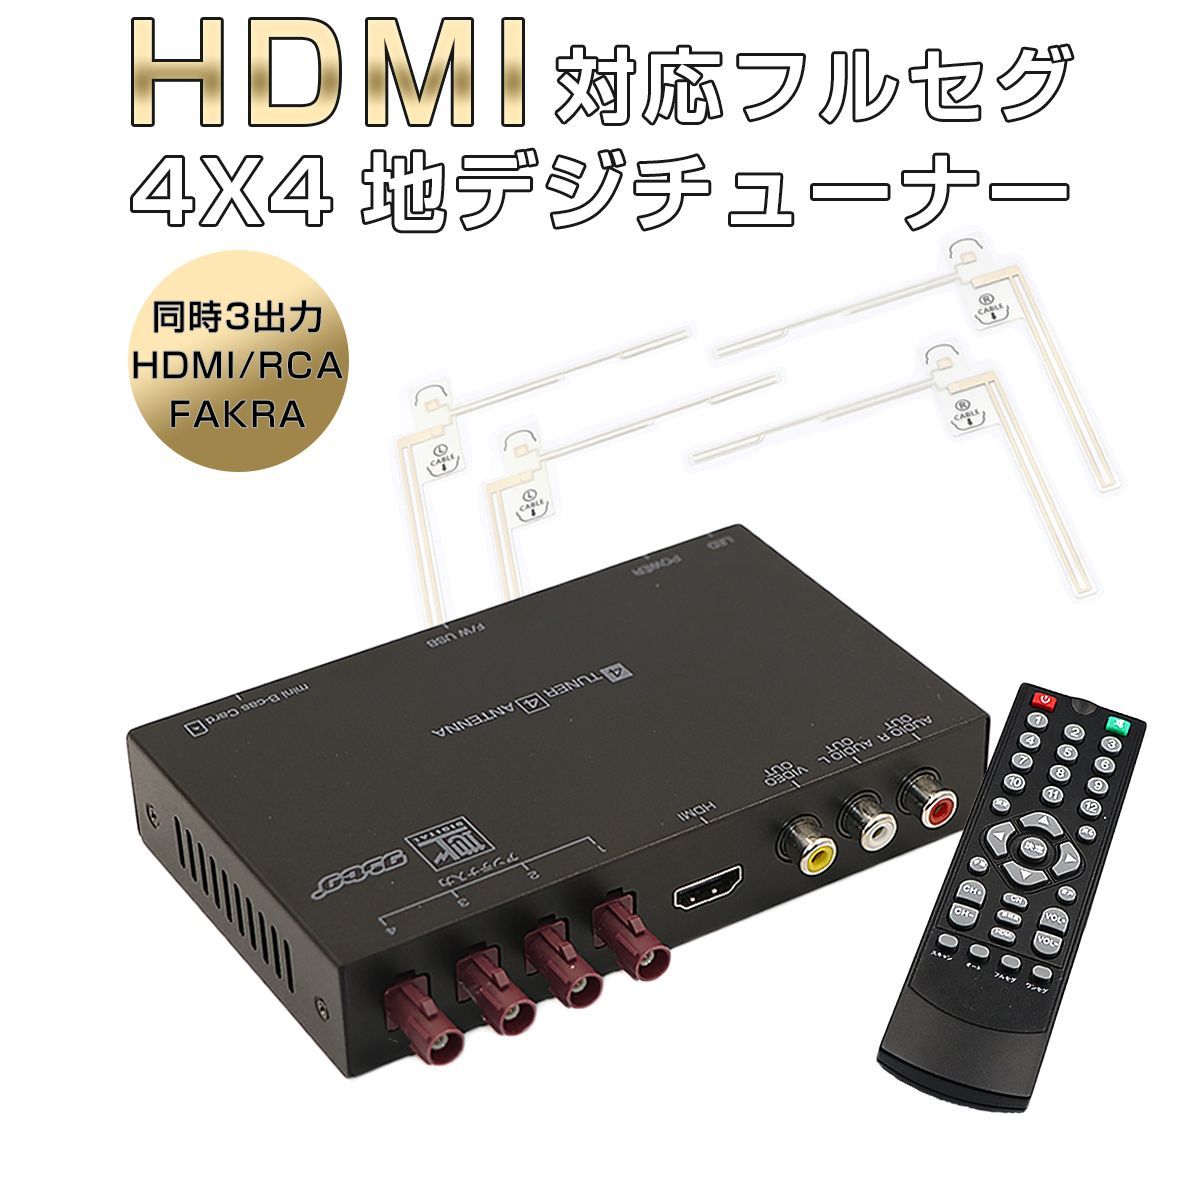 正規品豊富な★地デジチューナー 4×4フルセグ ワンセグ自動切換 HDMI対応 リモコン フィルムアンテナ付 小型軽量タイプ フルセグチューナー DT4100 その他